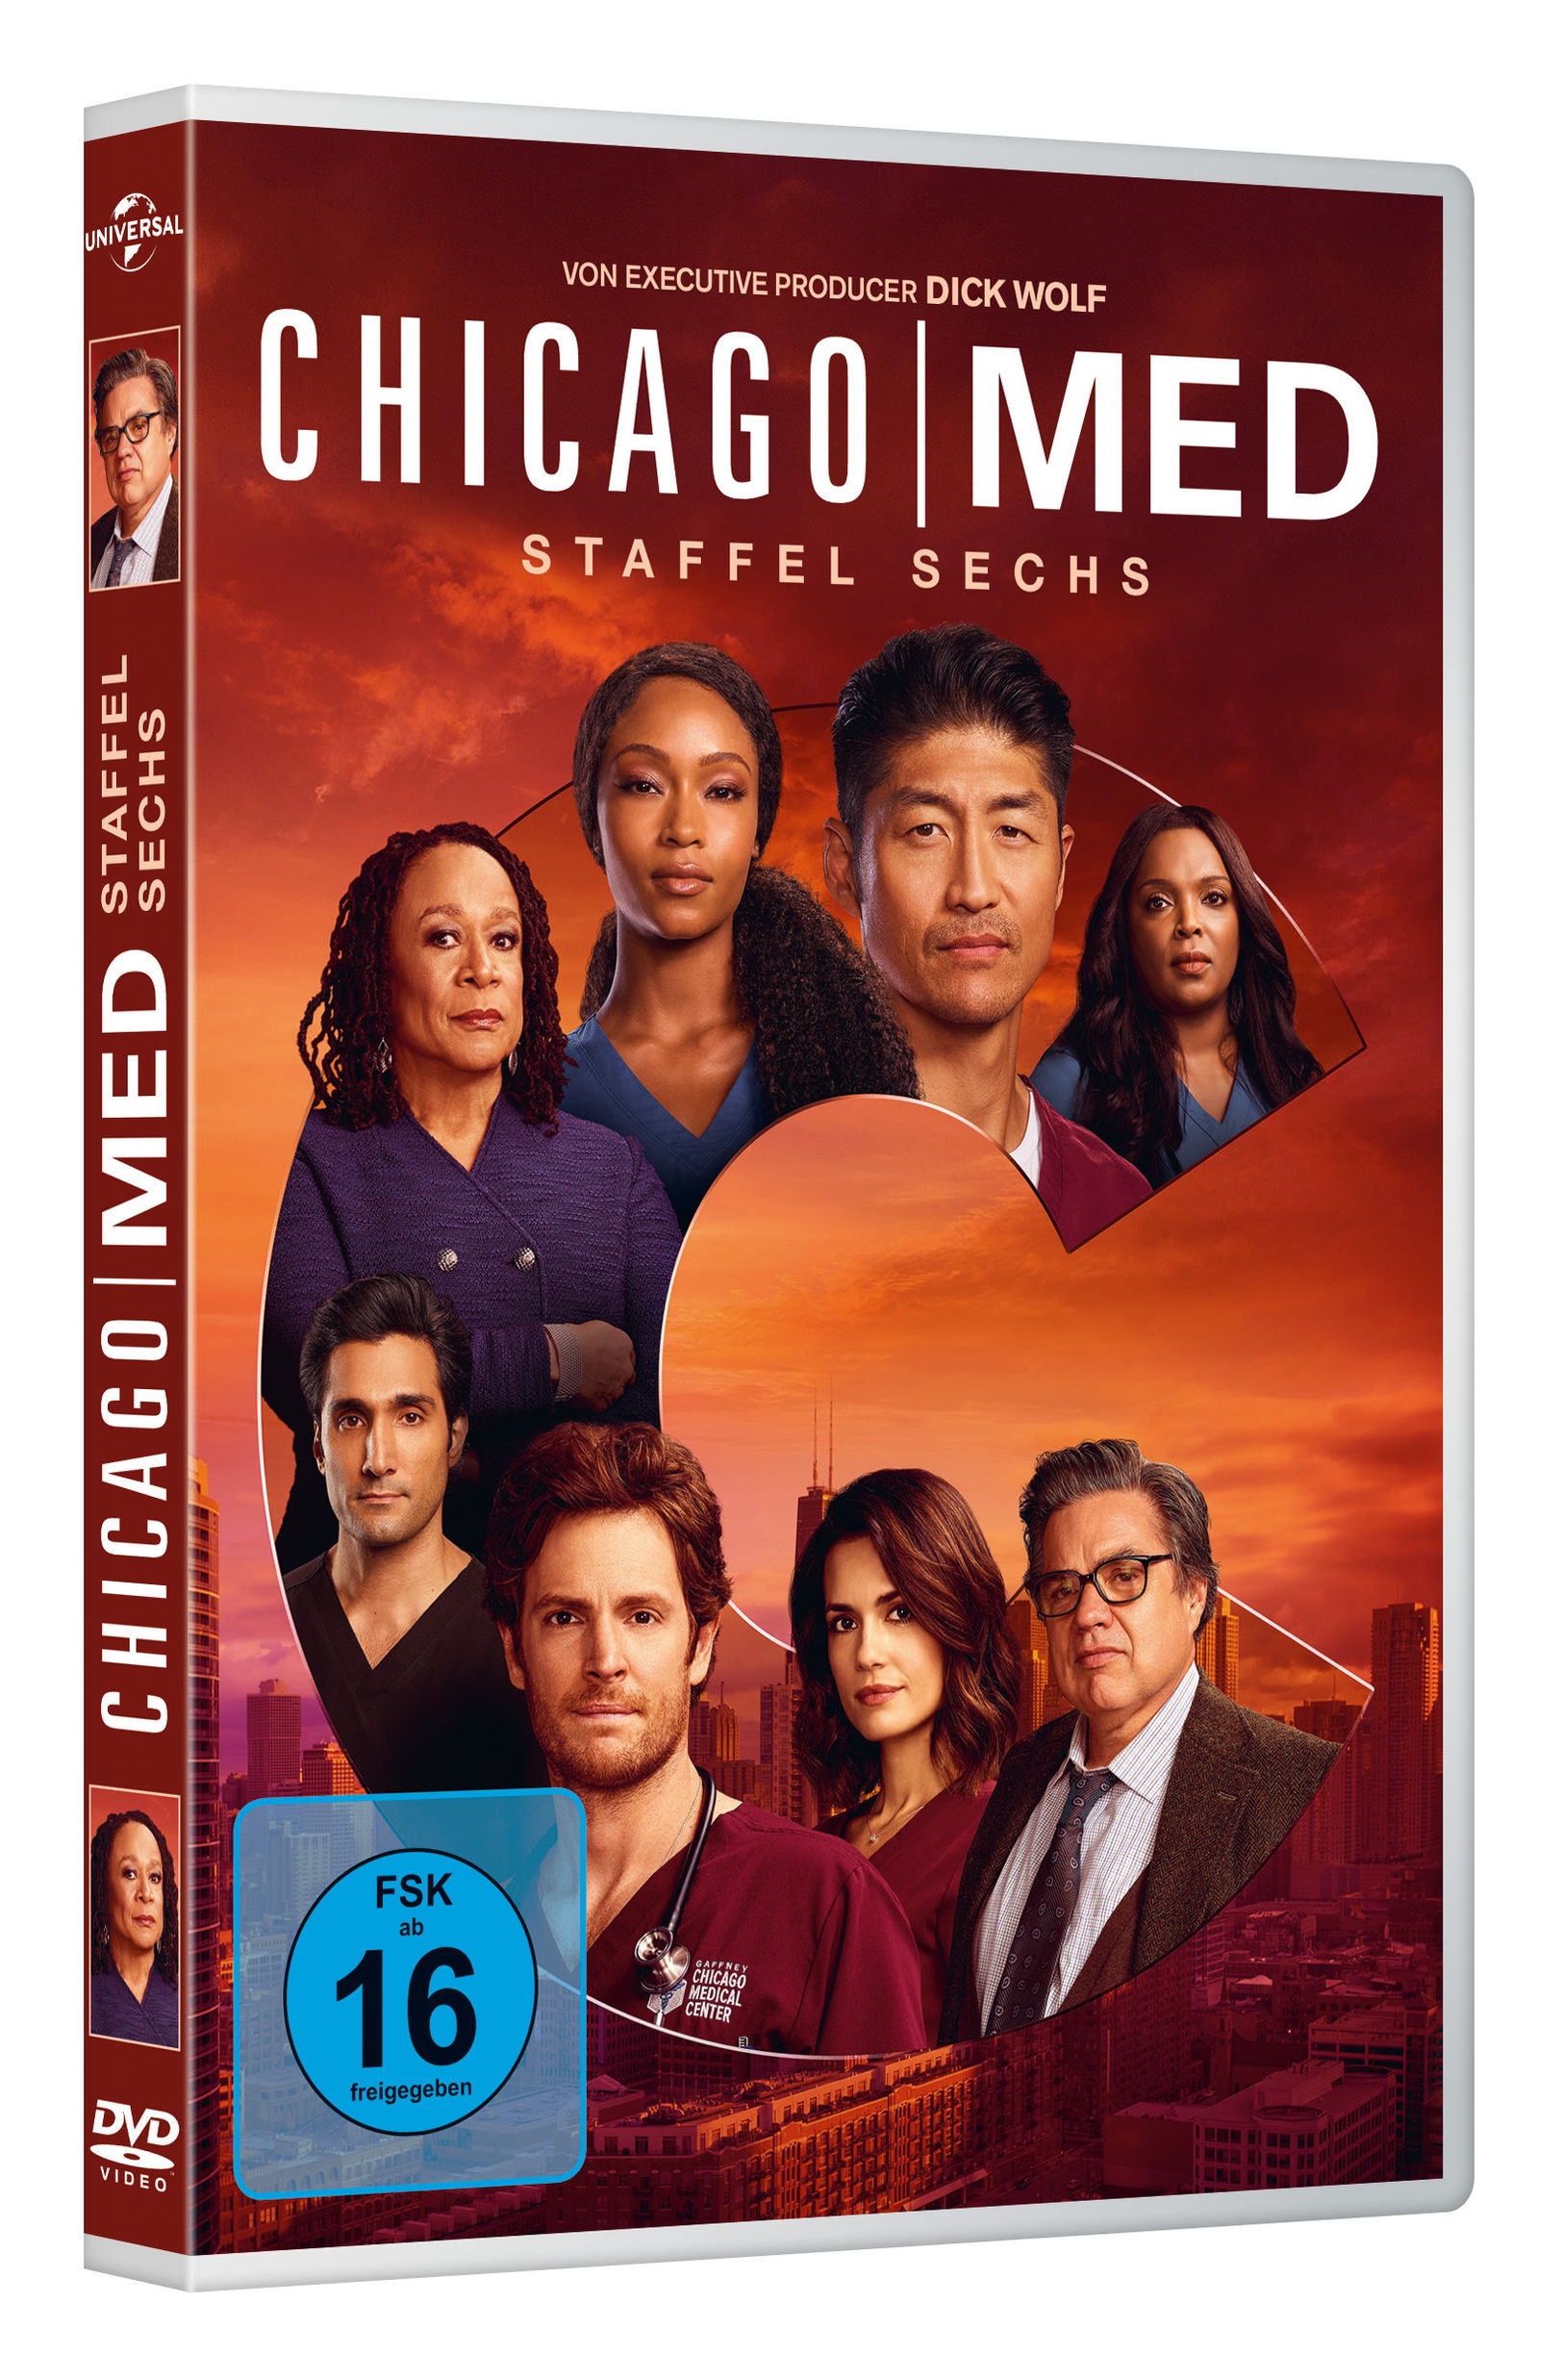 Chicago Med - Staffel 6 DVD bei Weltbild.de bestellen